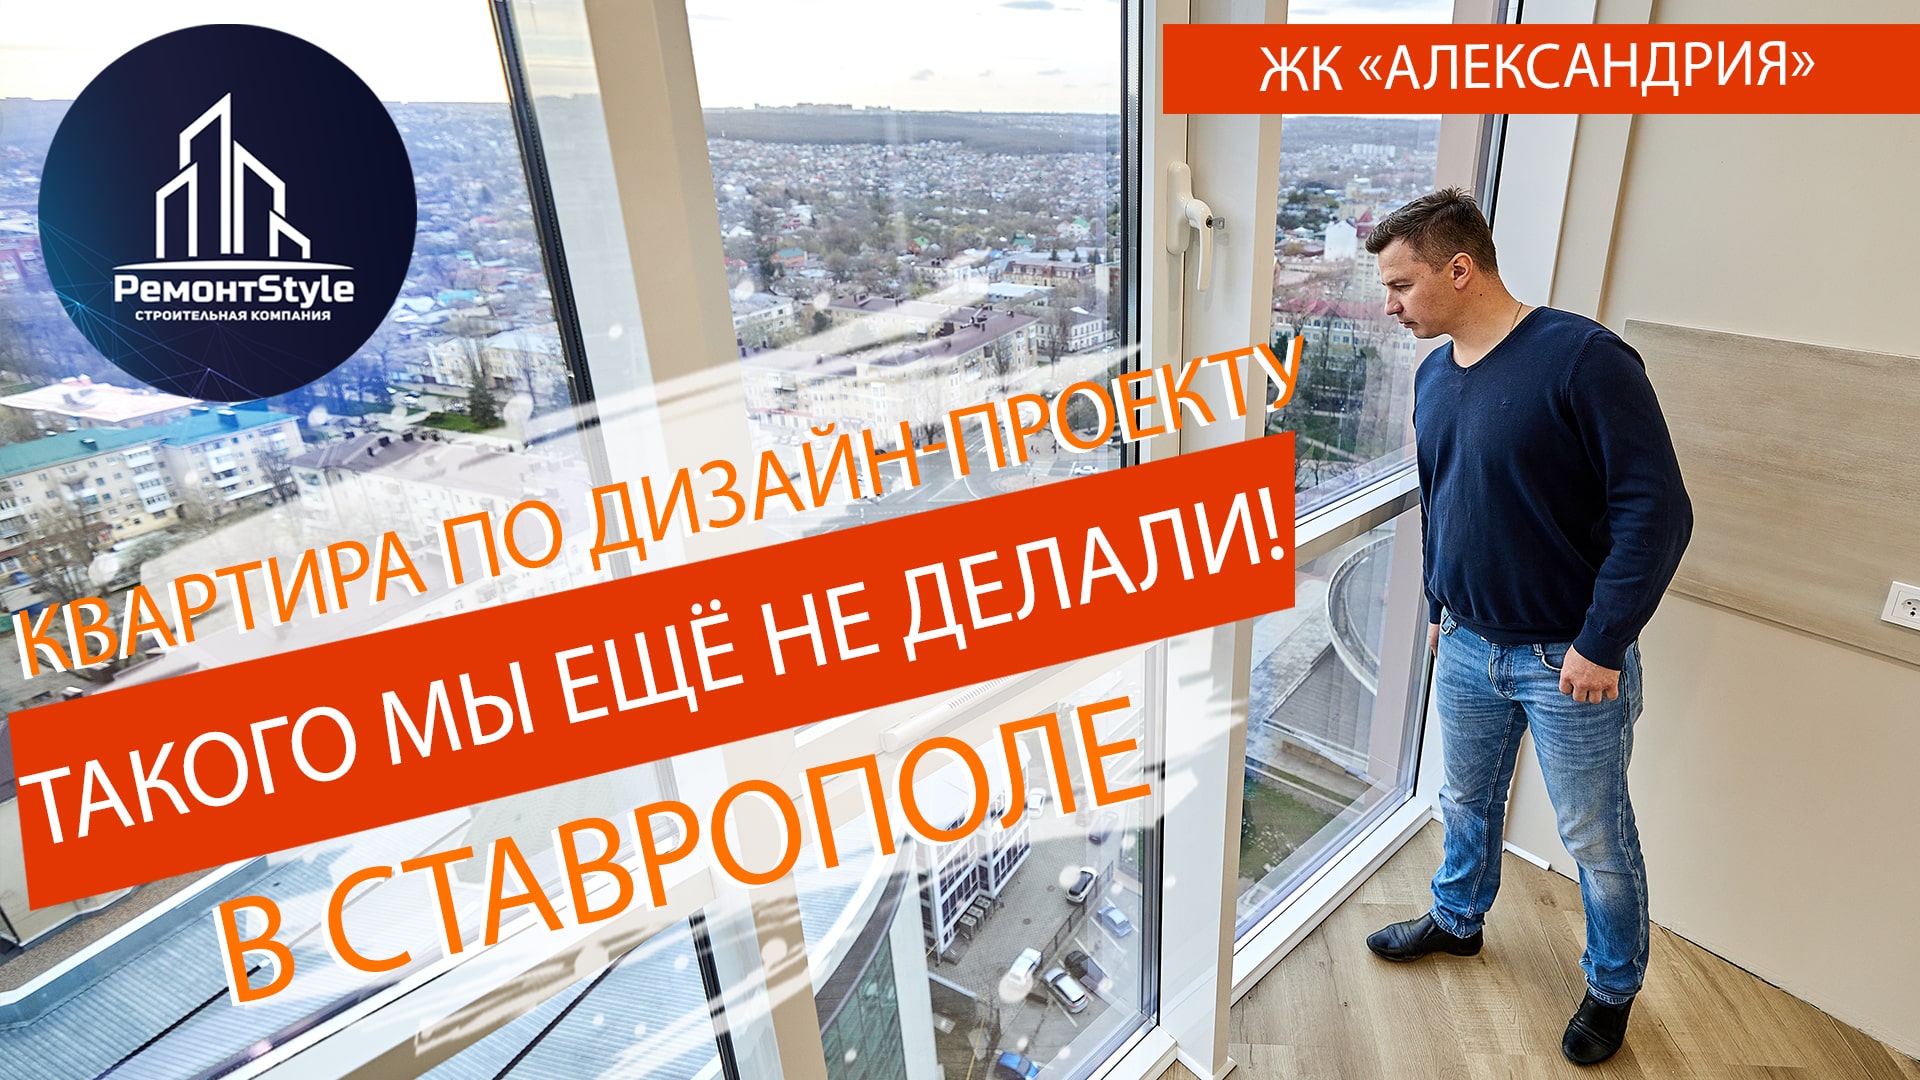 Ремонт по дизайн-проекту в самом высоком здании Ставрополя, ЖК "Александрия".